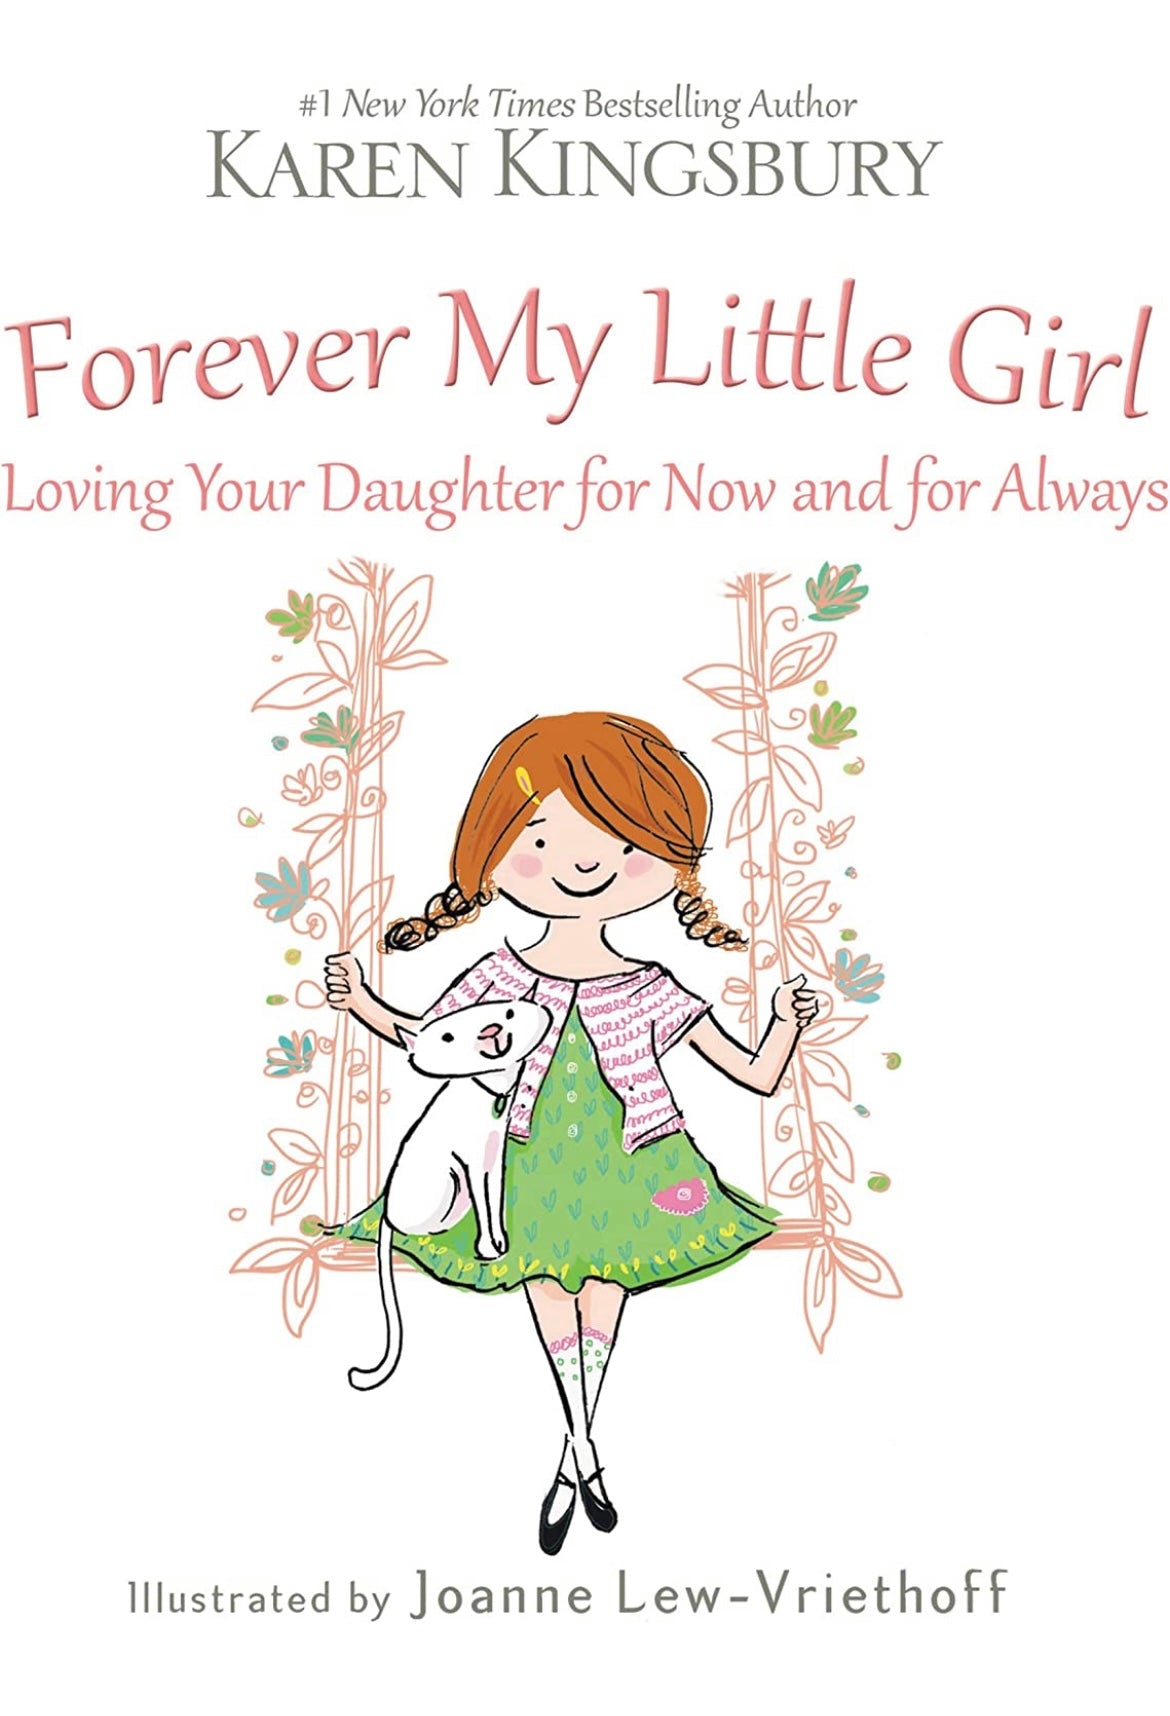 Forever my little girl book